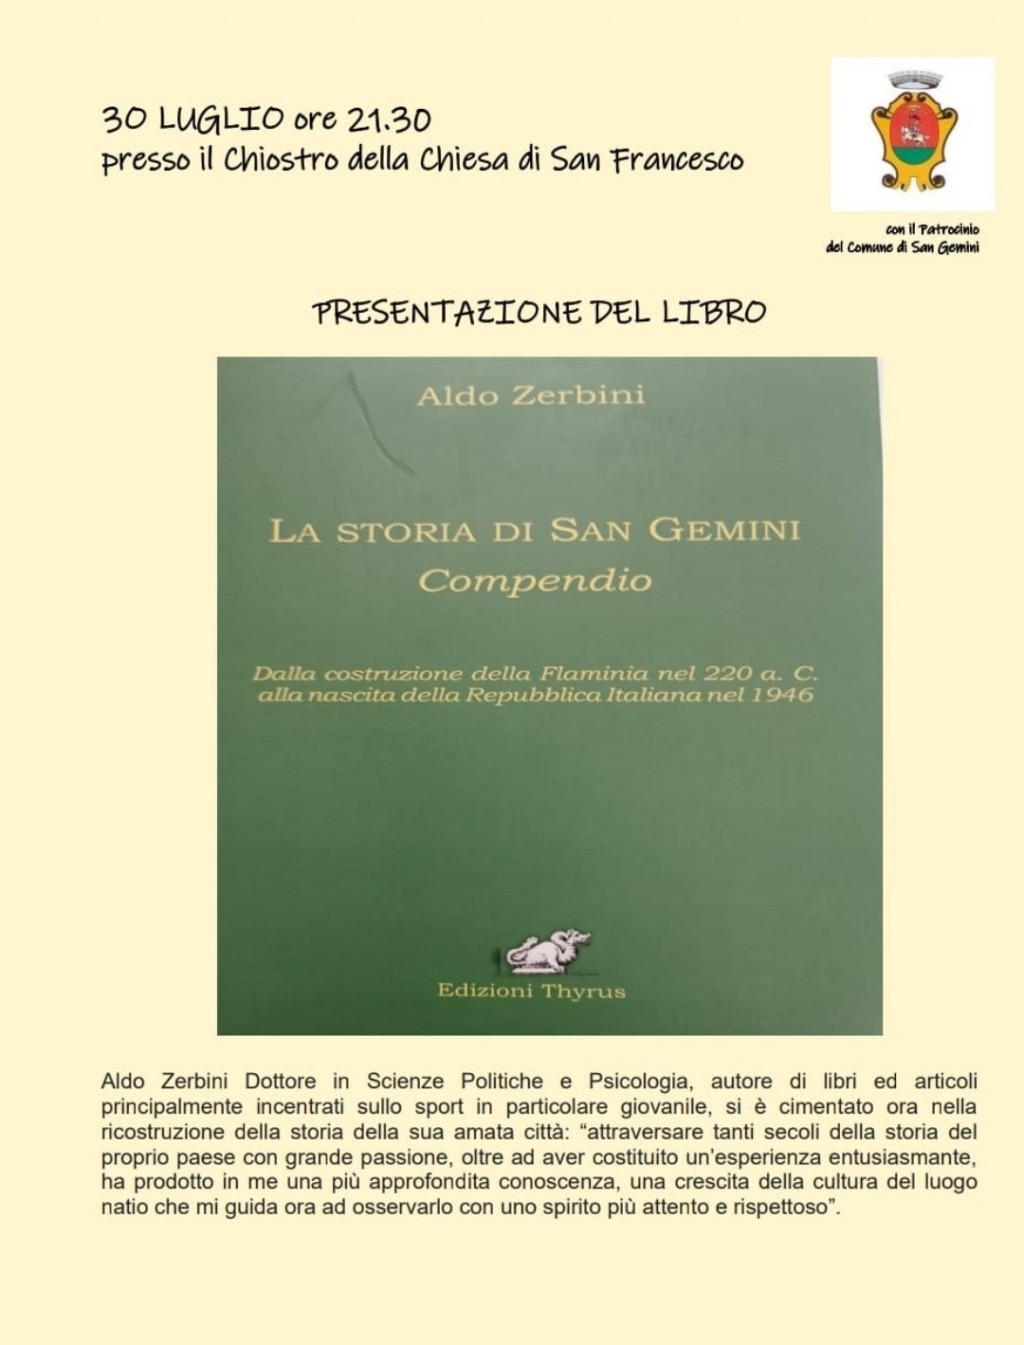 immagine 3O LUGLIO ORE 21.30  Presentazione del libro “ LA STORIA DI SAN GEMINI-COMPENDIO”  del Dott. ALDO ZERBINI